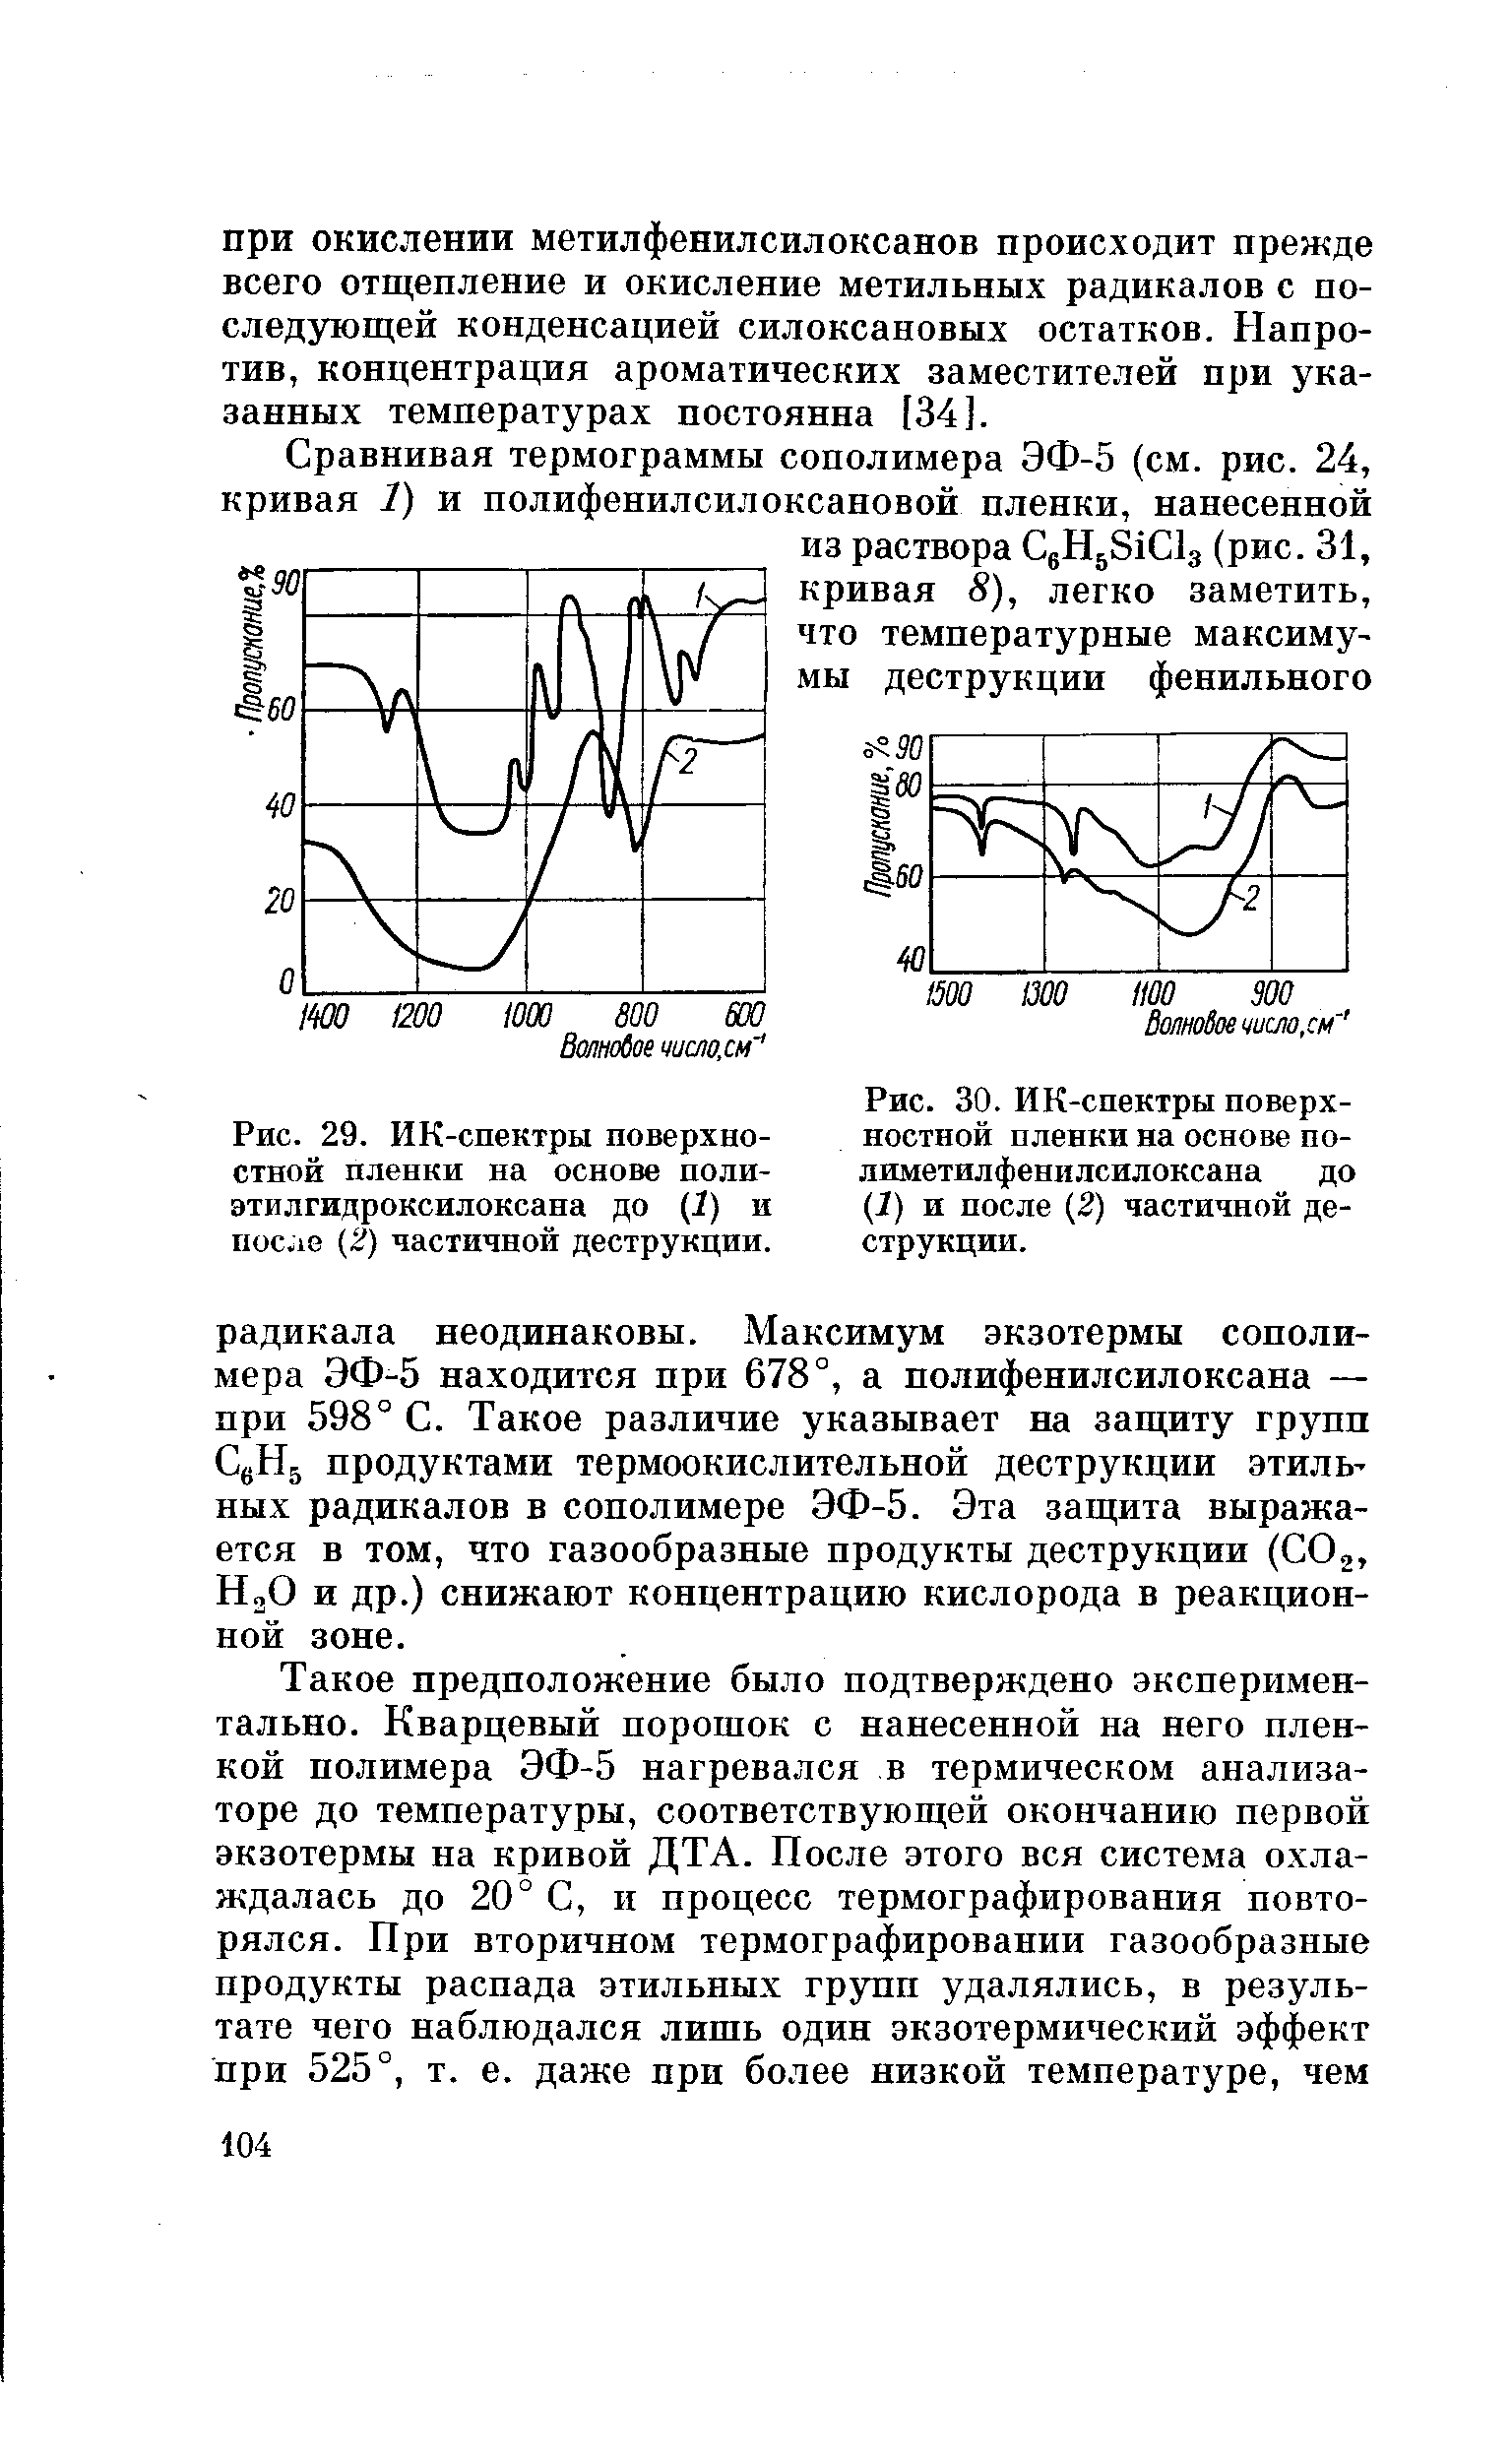 Рис. 29. ИК-спектры поверхностной пленки на основе поли-этилгидроксилоксапа до (1) и пос.ю (2) частичной деструкции.
